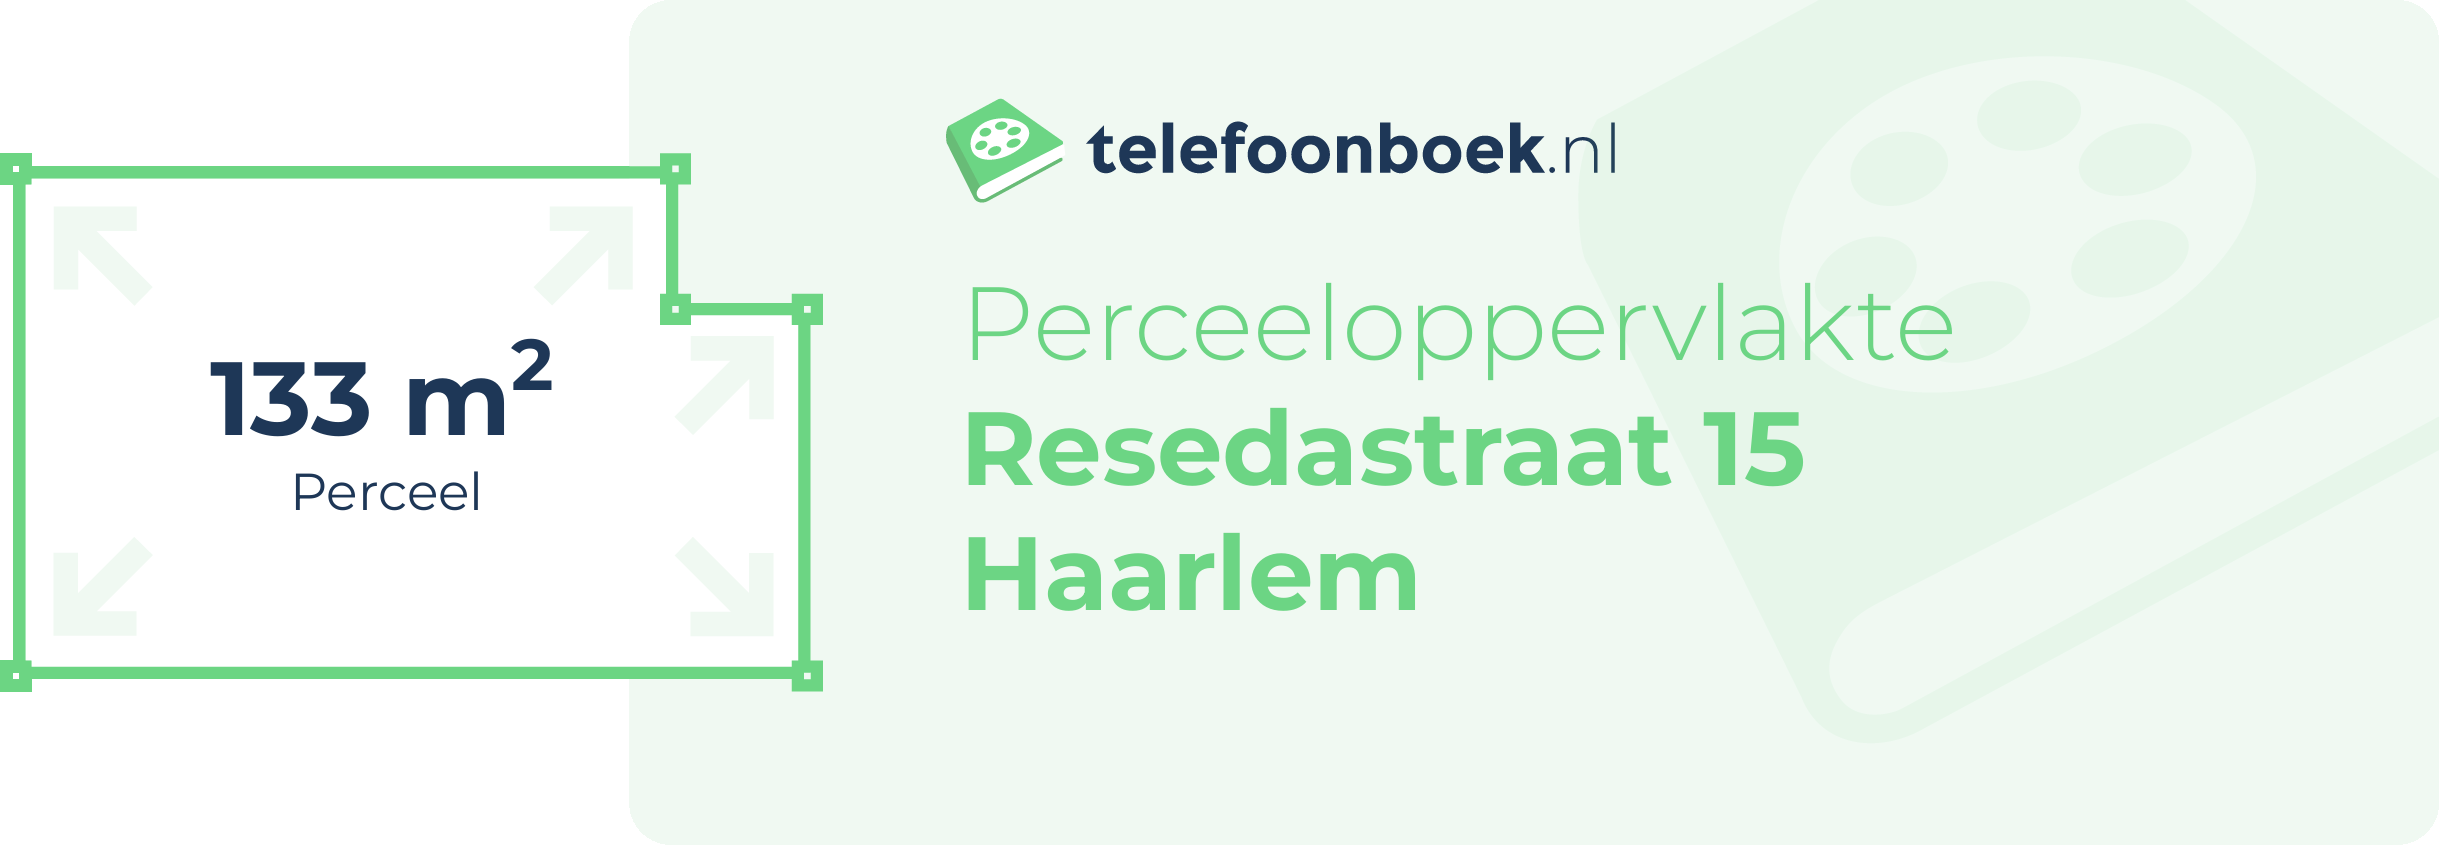 Perceeloppervlakte Resedastraat 15 Haarlem